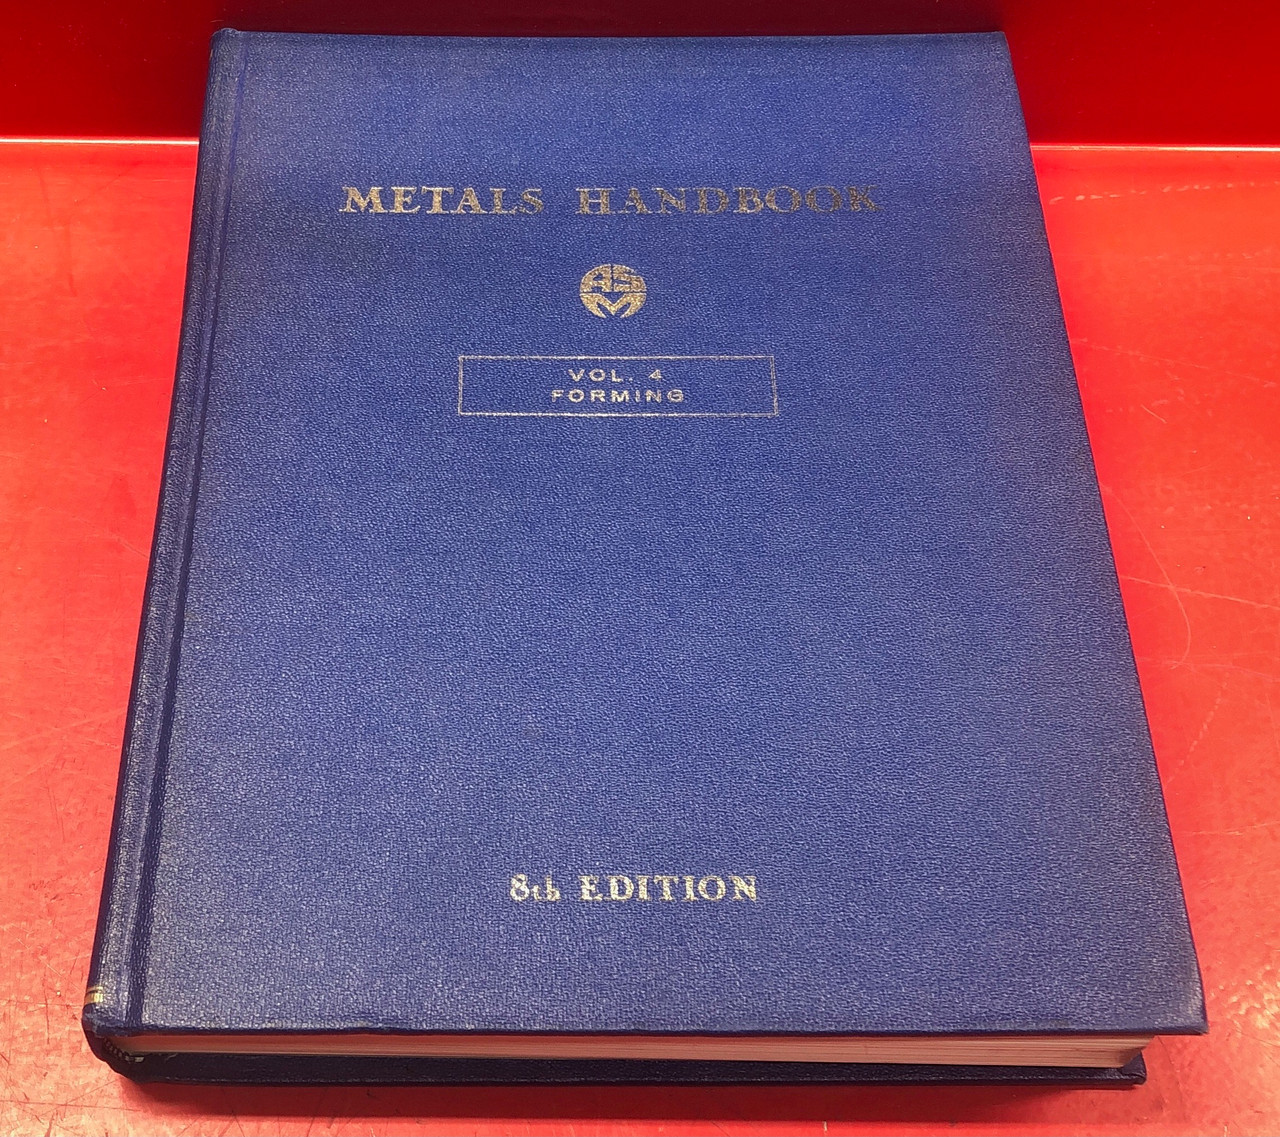 ASM Metals Handbook Volume 4  Forming 8th Edition 